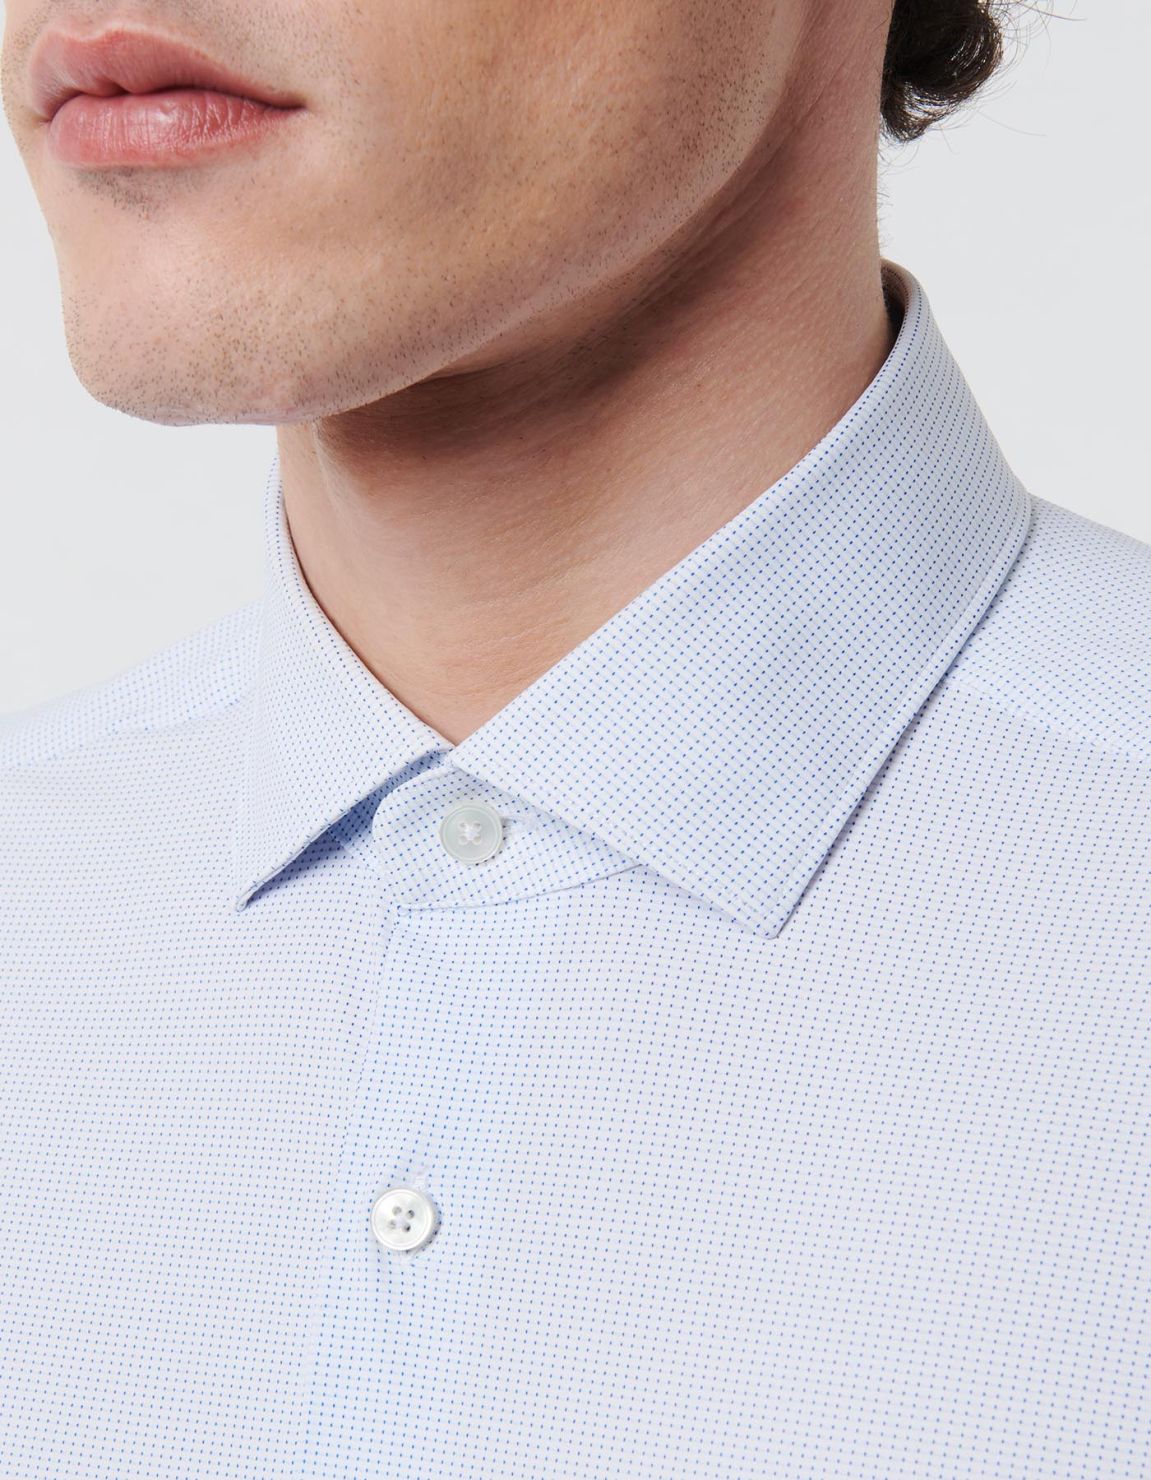 Camicia Collo francese piccolo Fantasia Armaturato Blu bianco Tailor Custom Fit 2